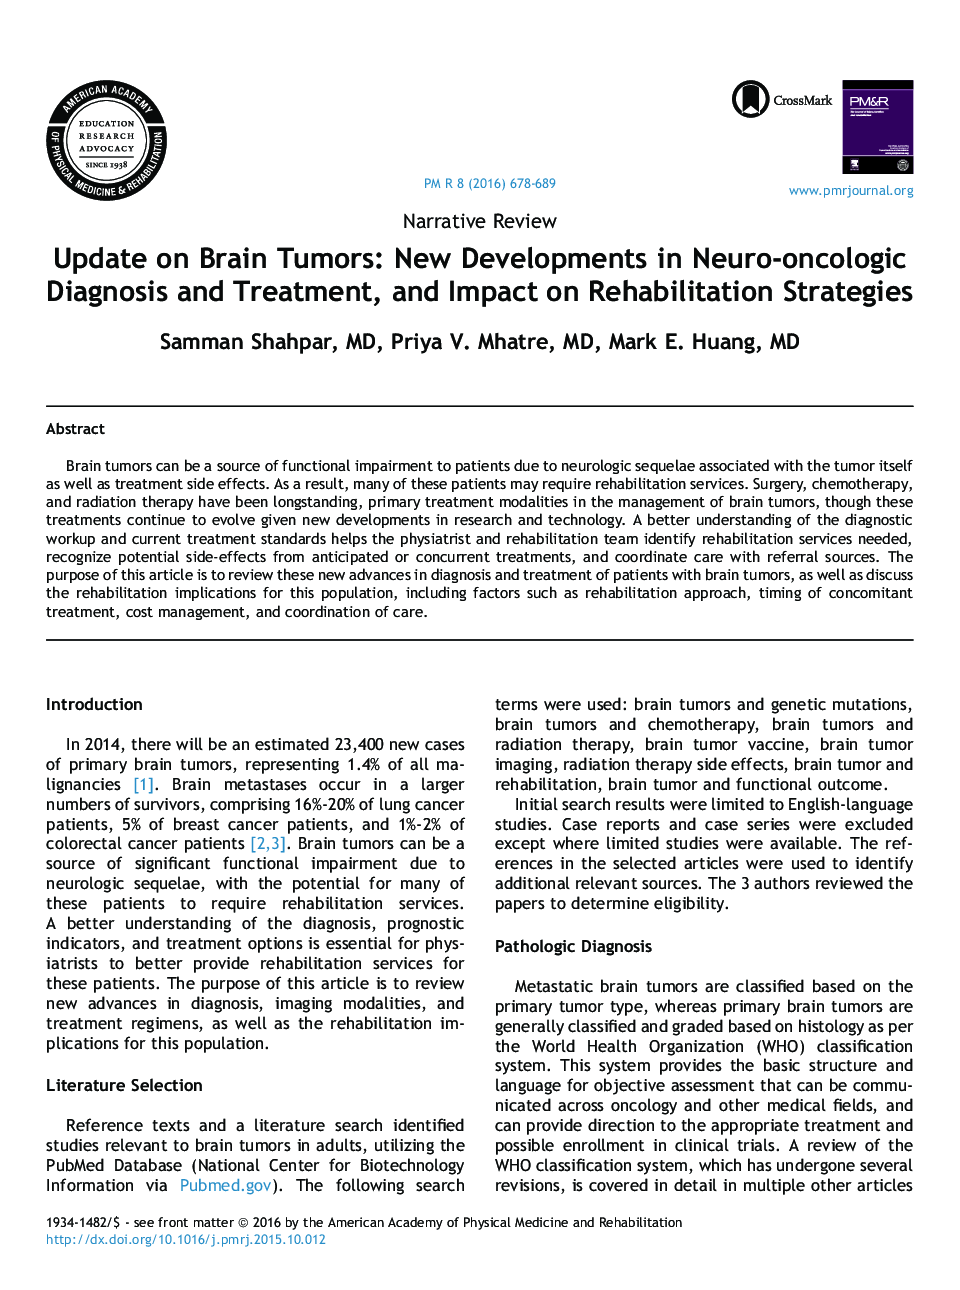 به روز رسانی در مورد تومورهای مغزی: پیشرفتهای جدید در تشخیص و درمان نورولوژیک و تاثیر آن بر راهبردهای توانبخشی 